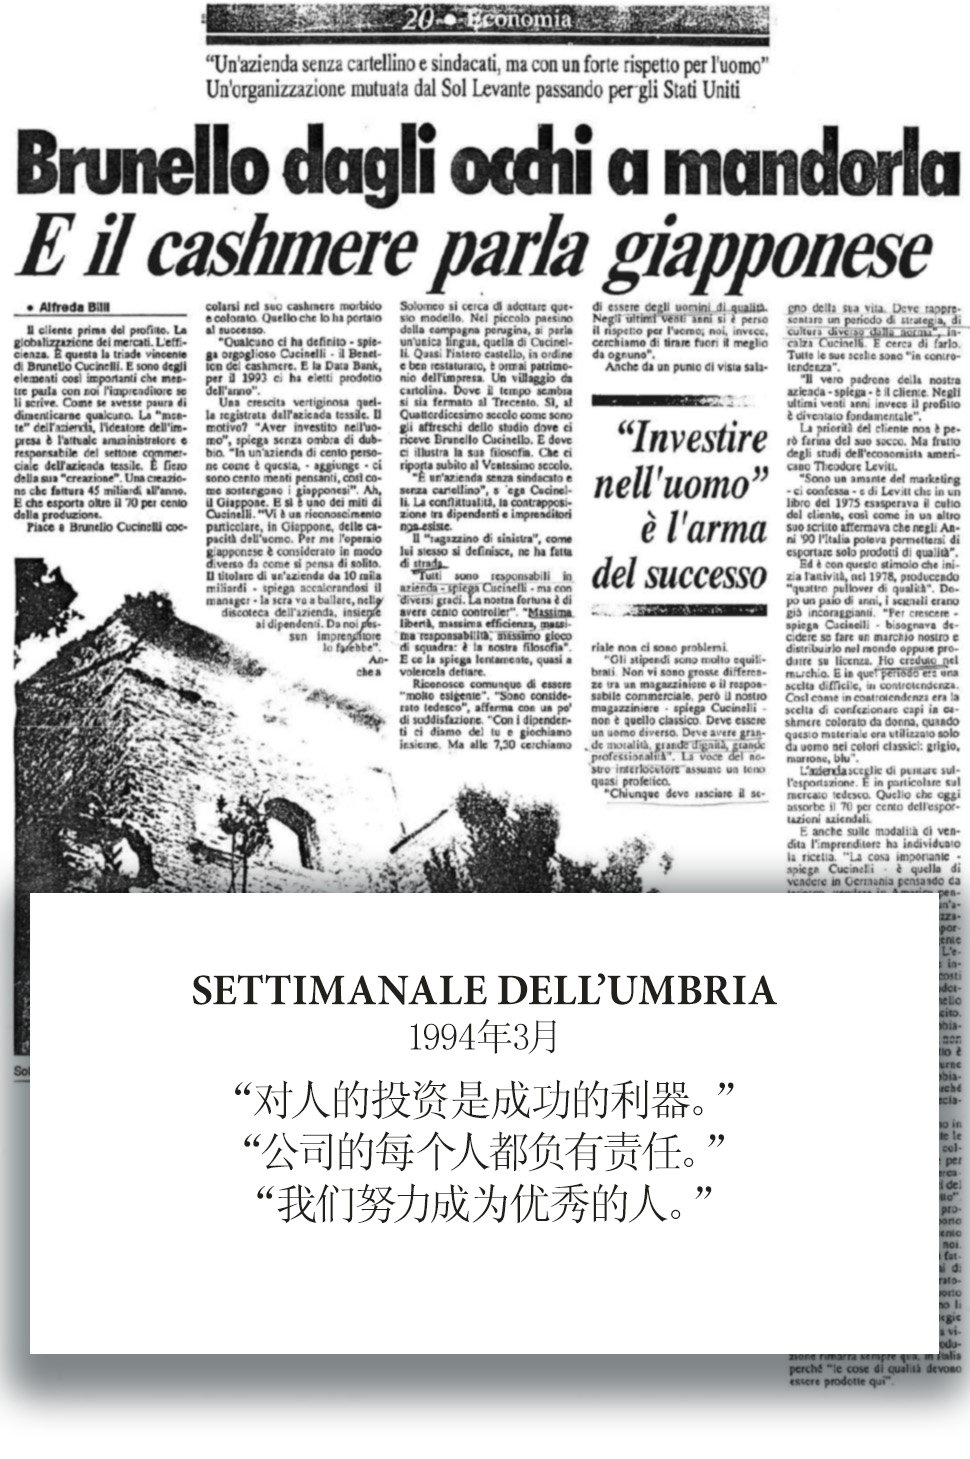 1994 Settimanale dell'Umbria